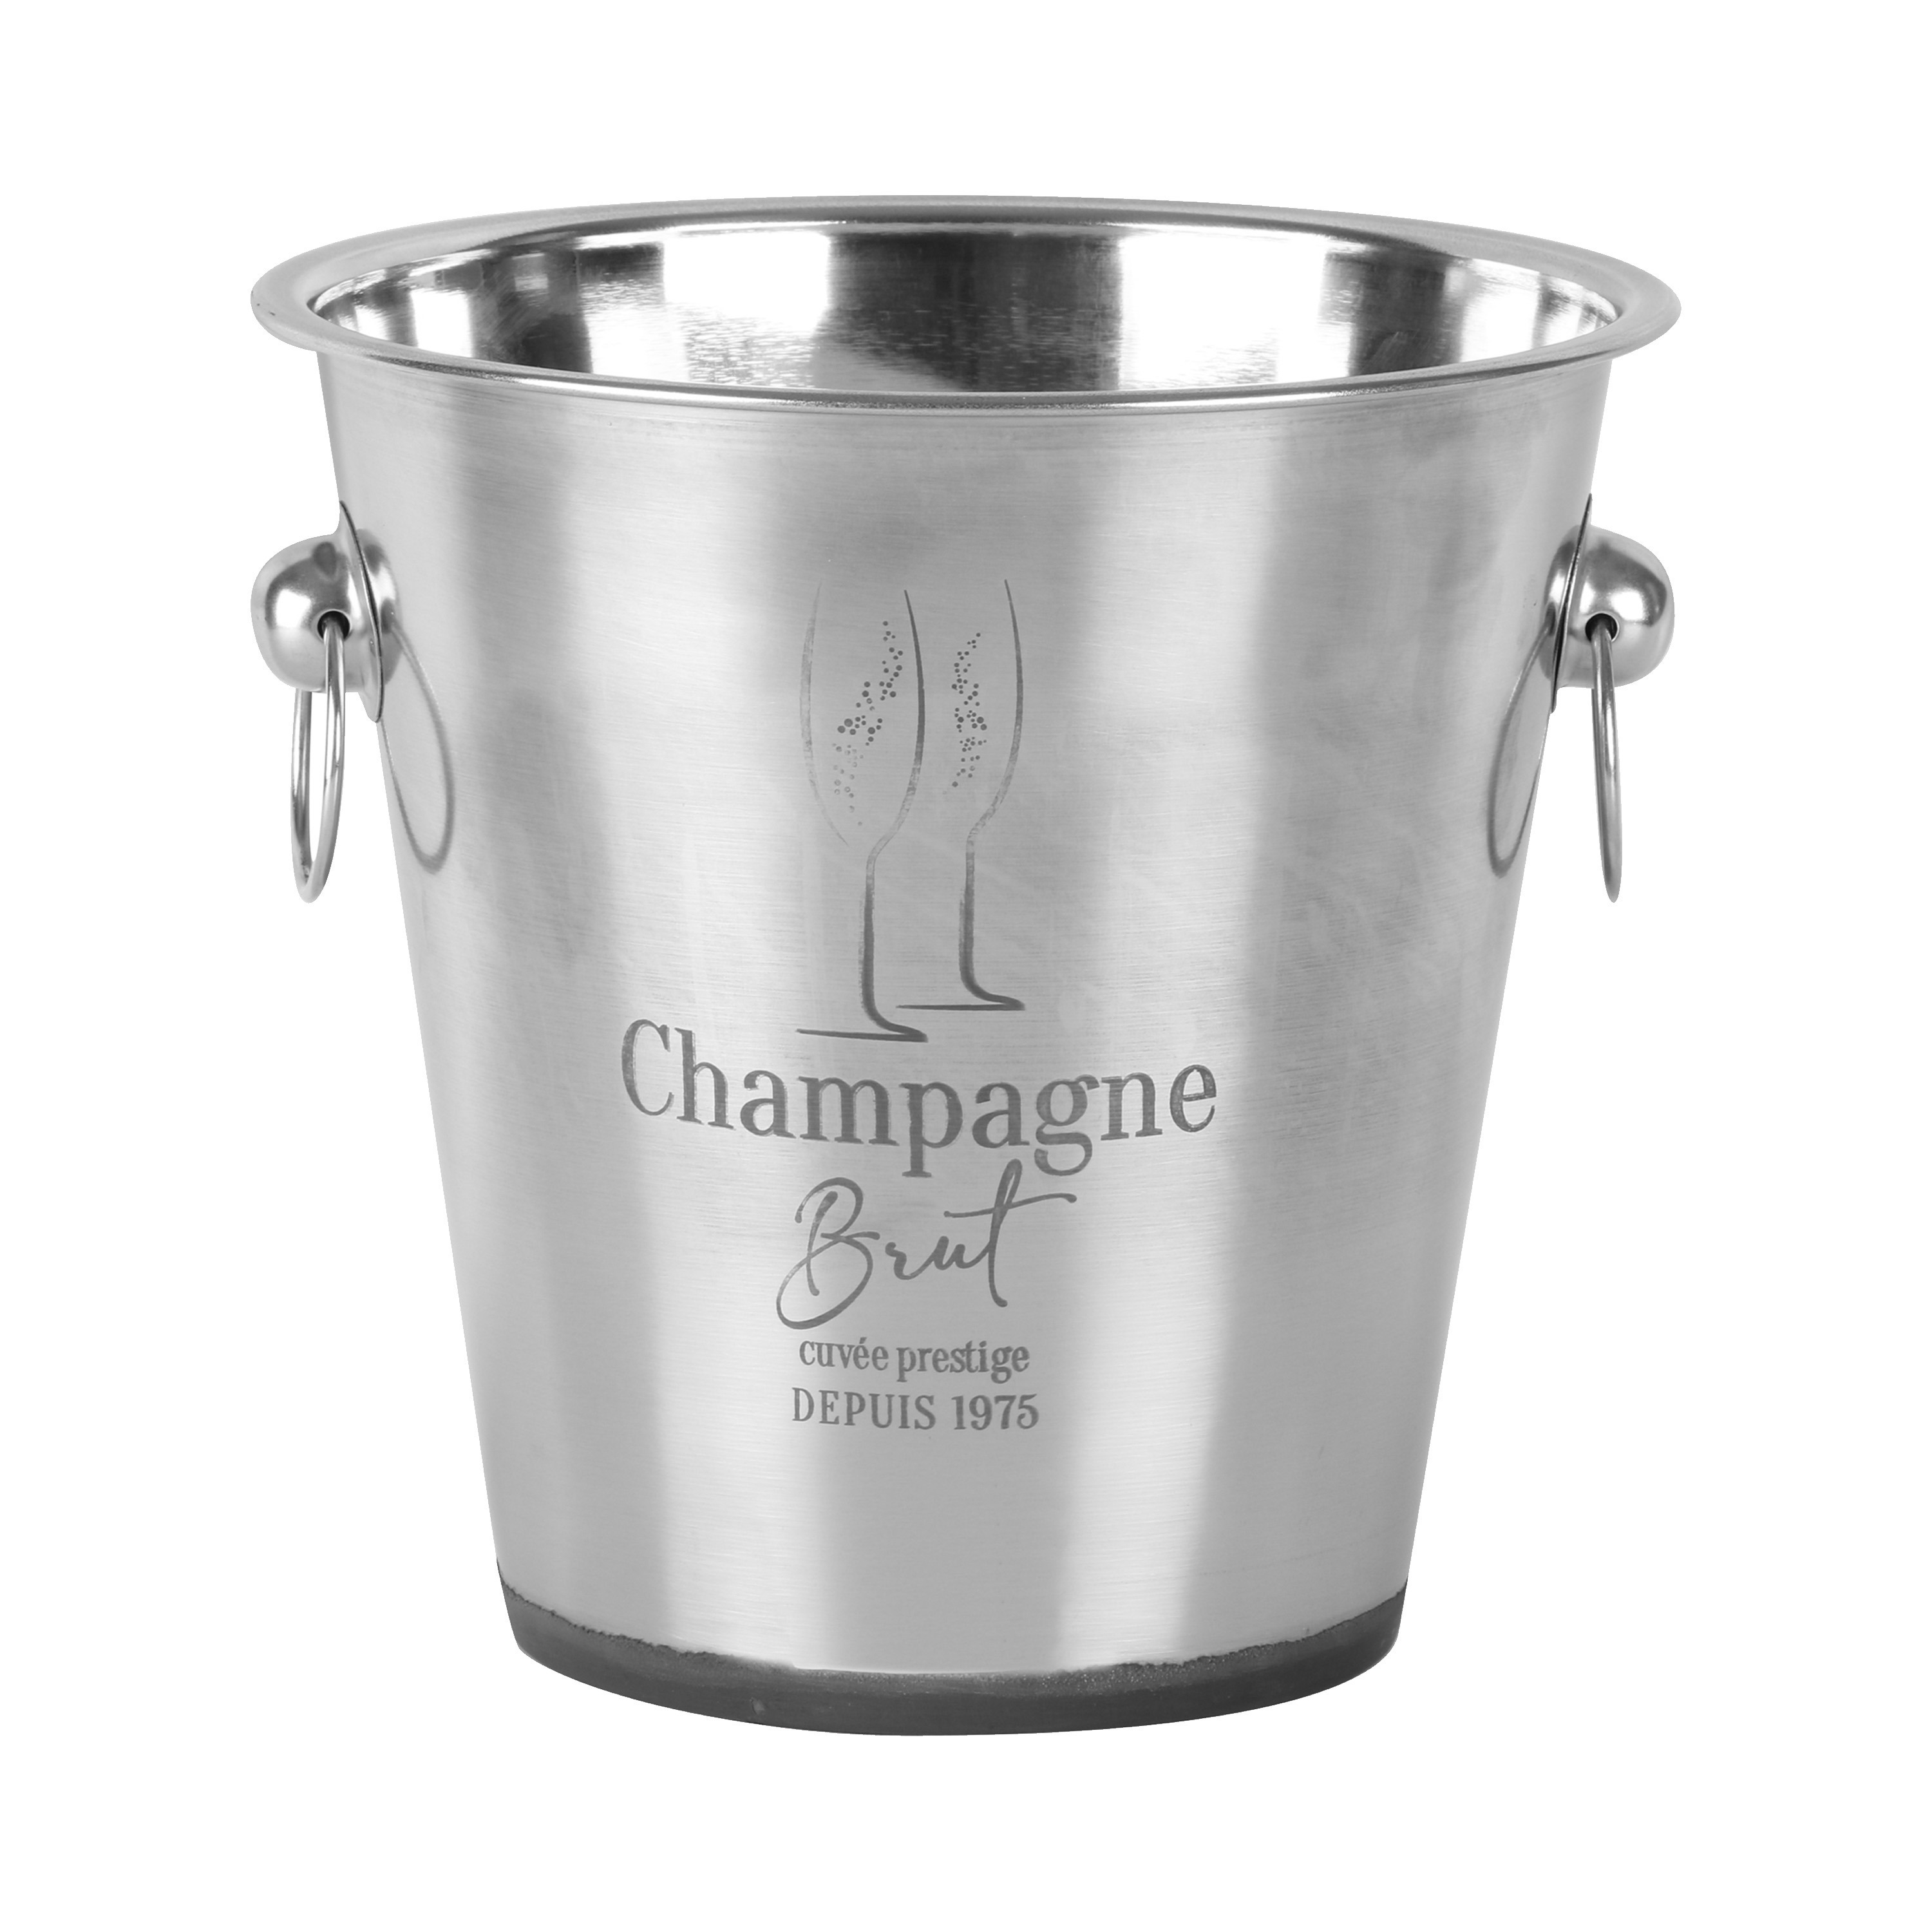 Champagne & wijnfles koeler-ijsemmer zilver rvs 22 x 21 cm De luxe model